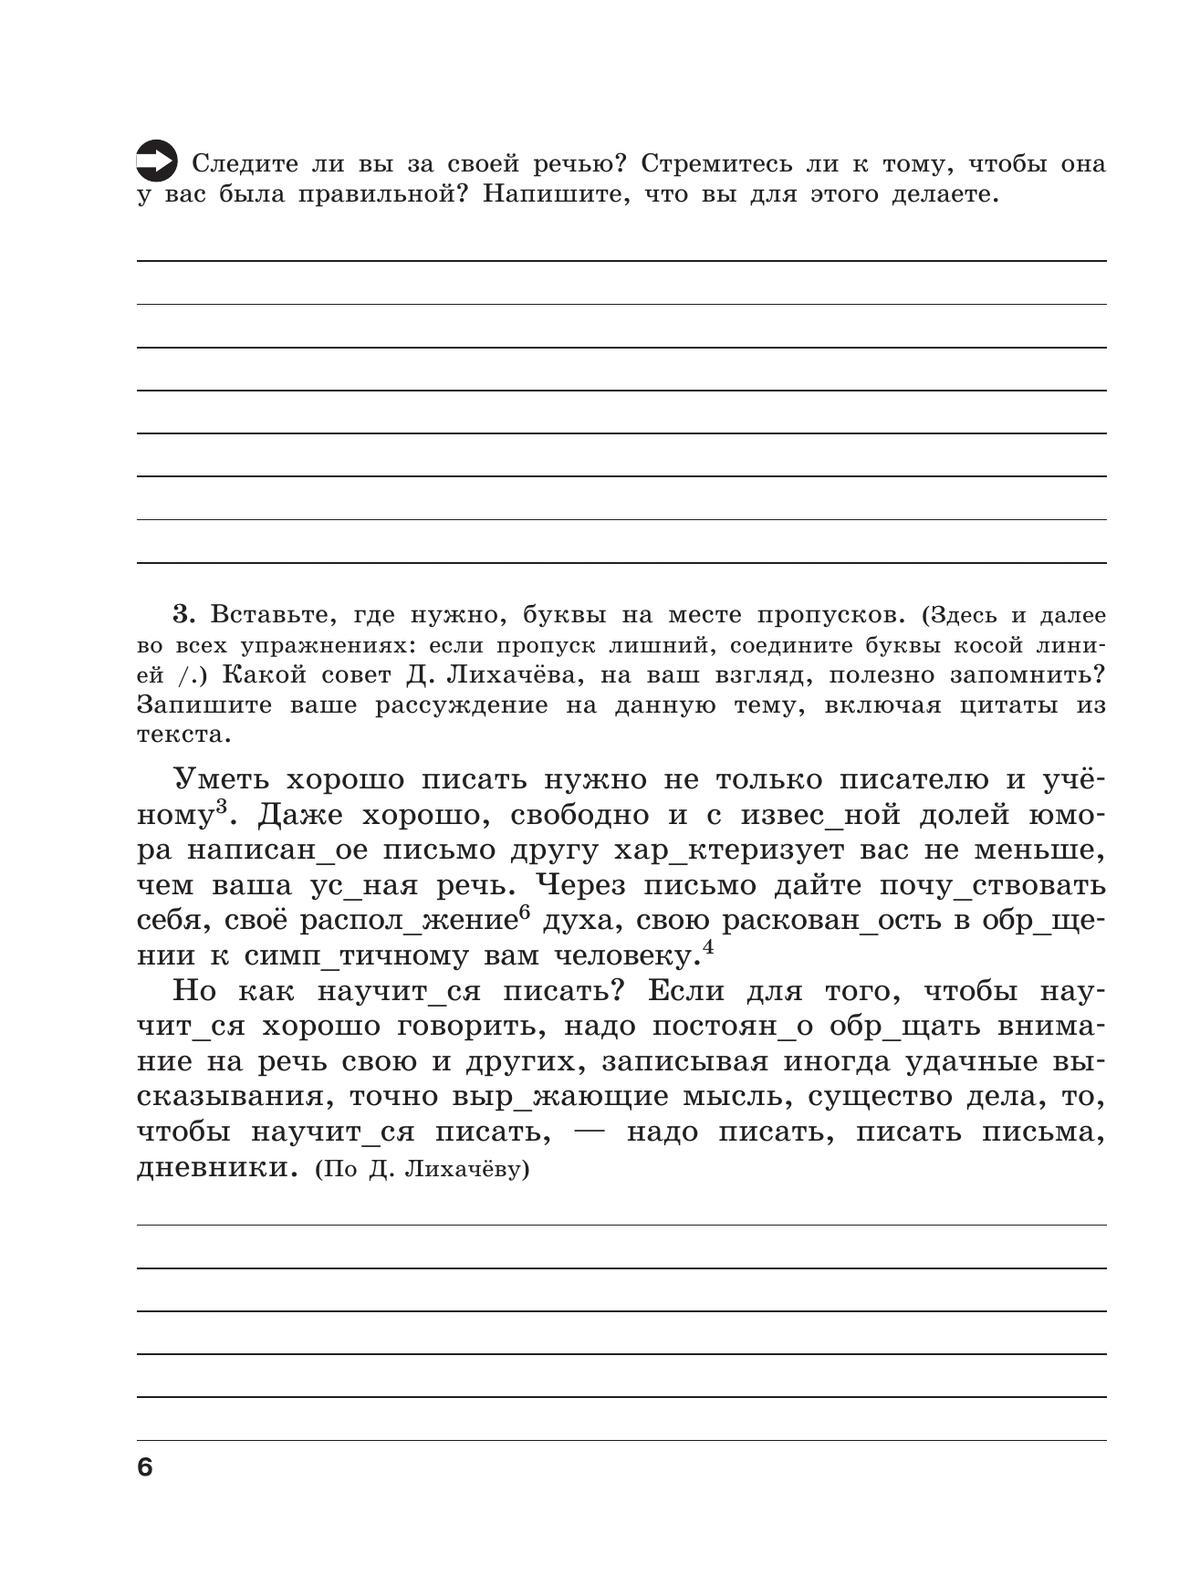 Скорая помощь по русскому языку. Рабочая тетрадь. 9 класс. В 2 ч. Часть 1 2